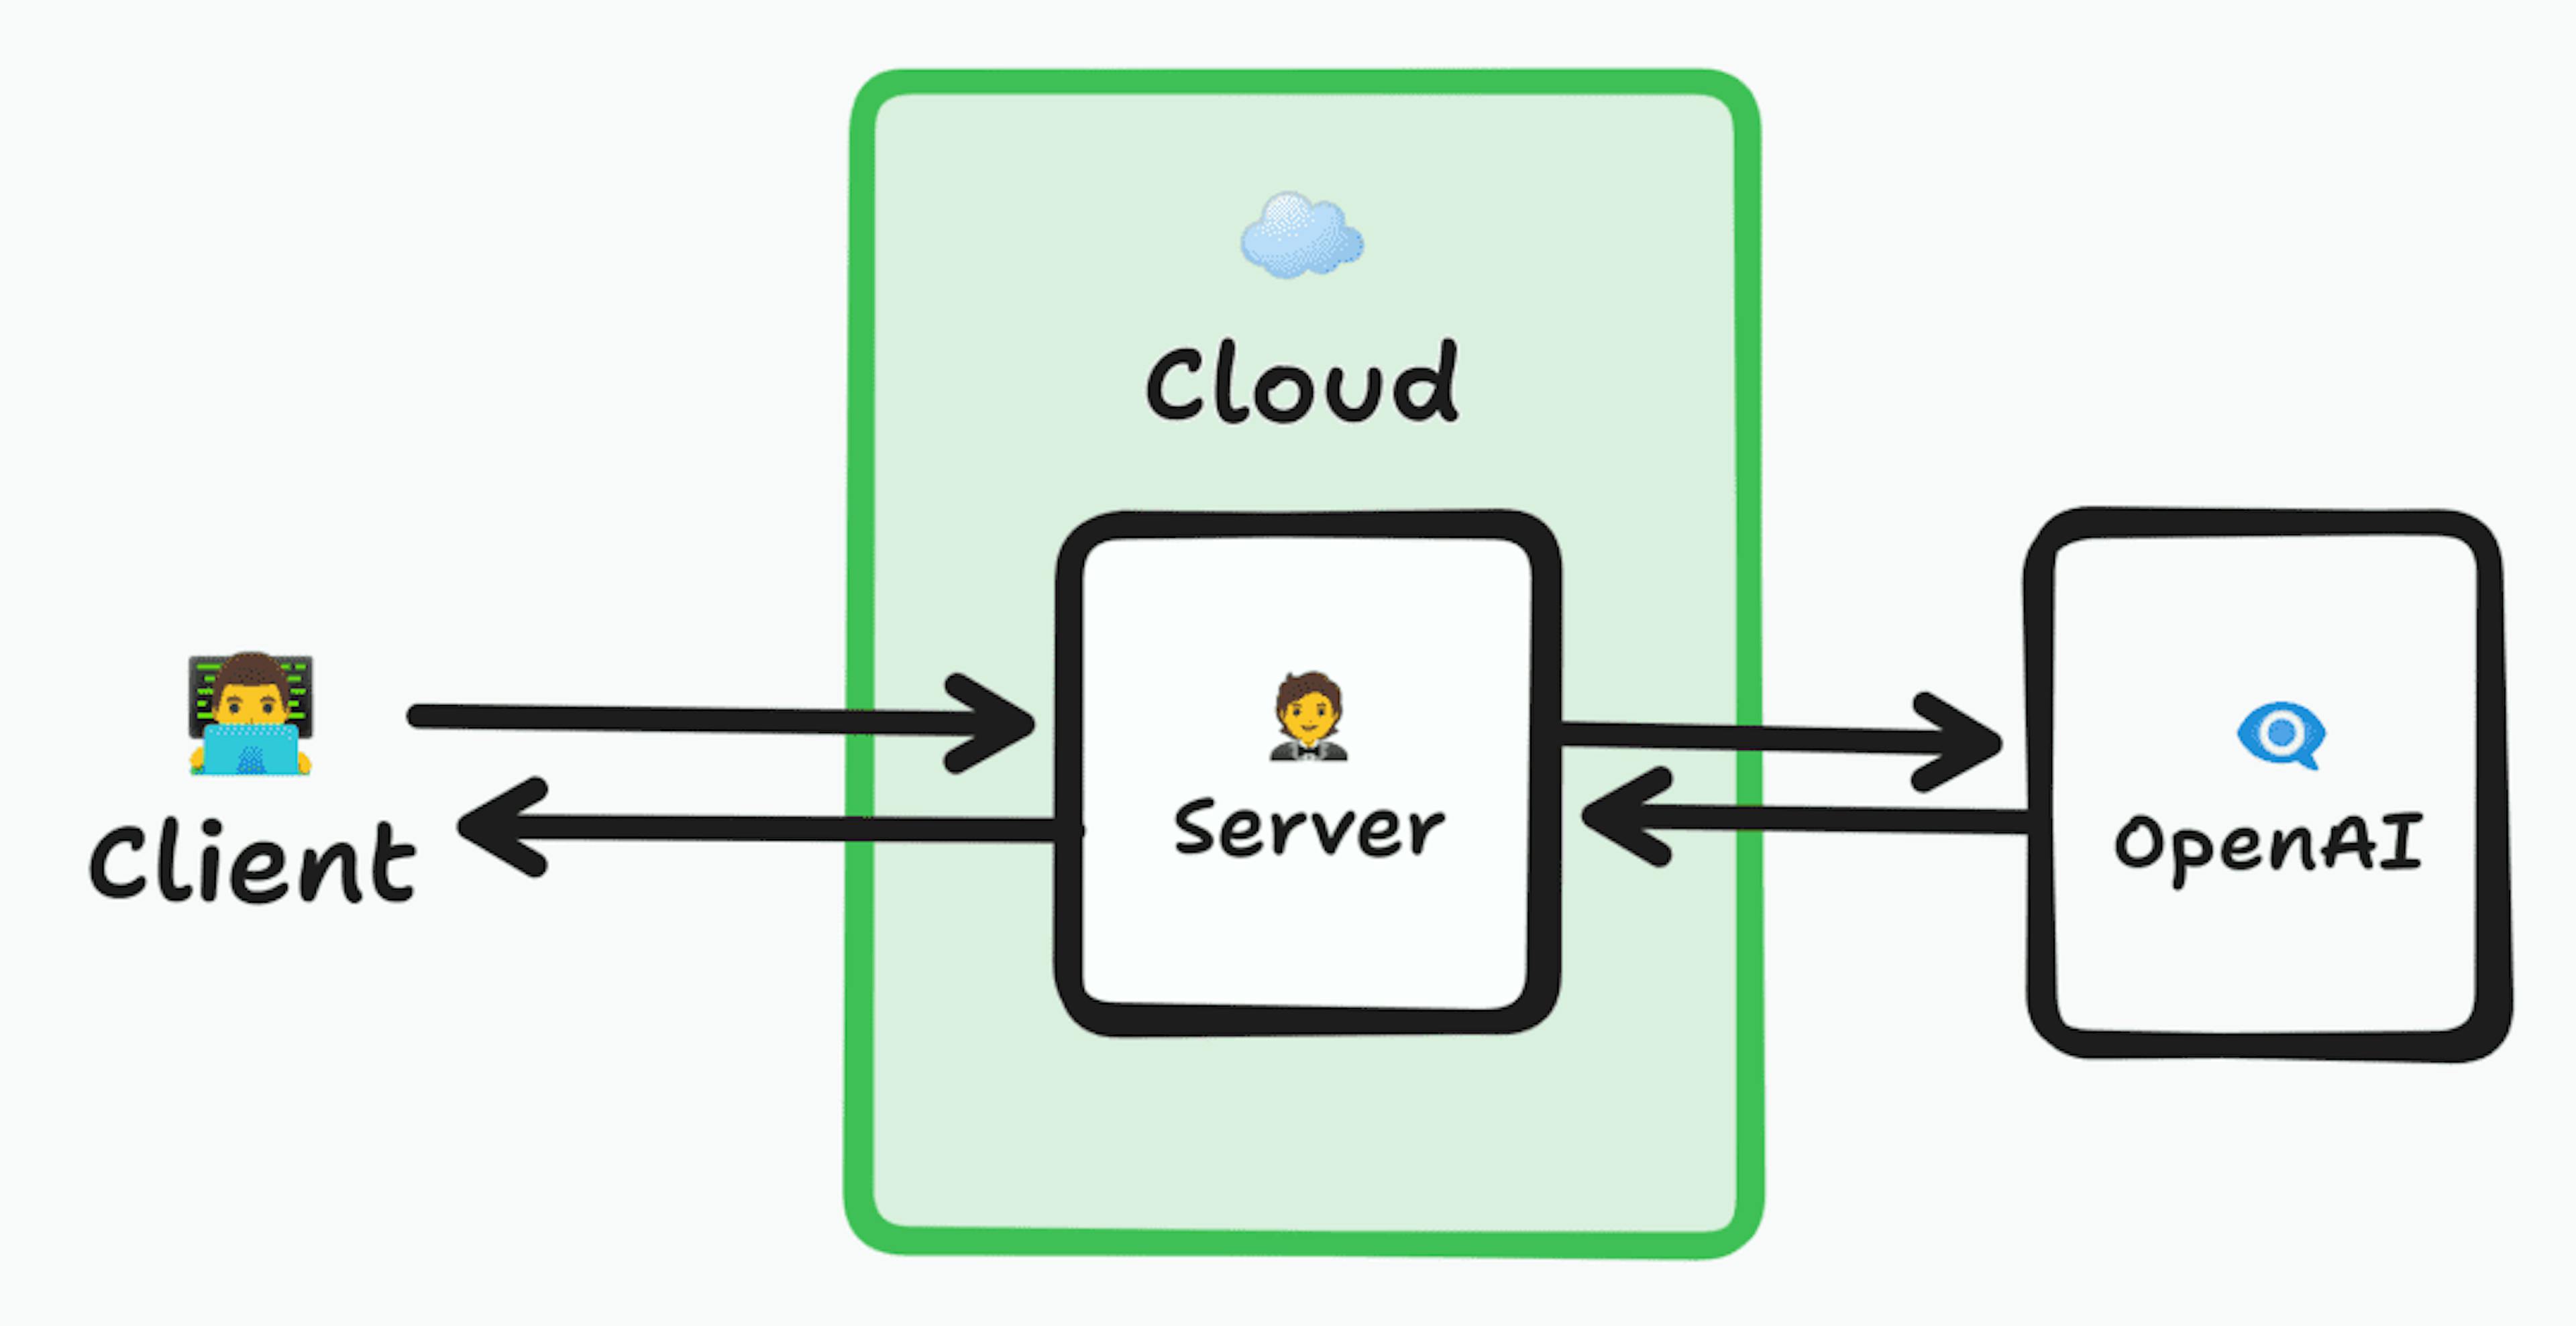 클라우드 내부의 서버에 연결하는 클라이언트를 보여주는 아키텍처 다이어그램. 이 서버는 요청을 OpenAI에 전달한 다음 서버로 반환하고 다시 클라이언트로 반환합니다.